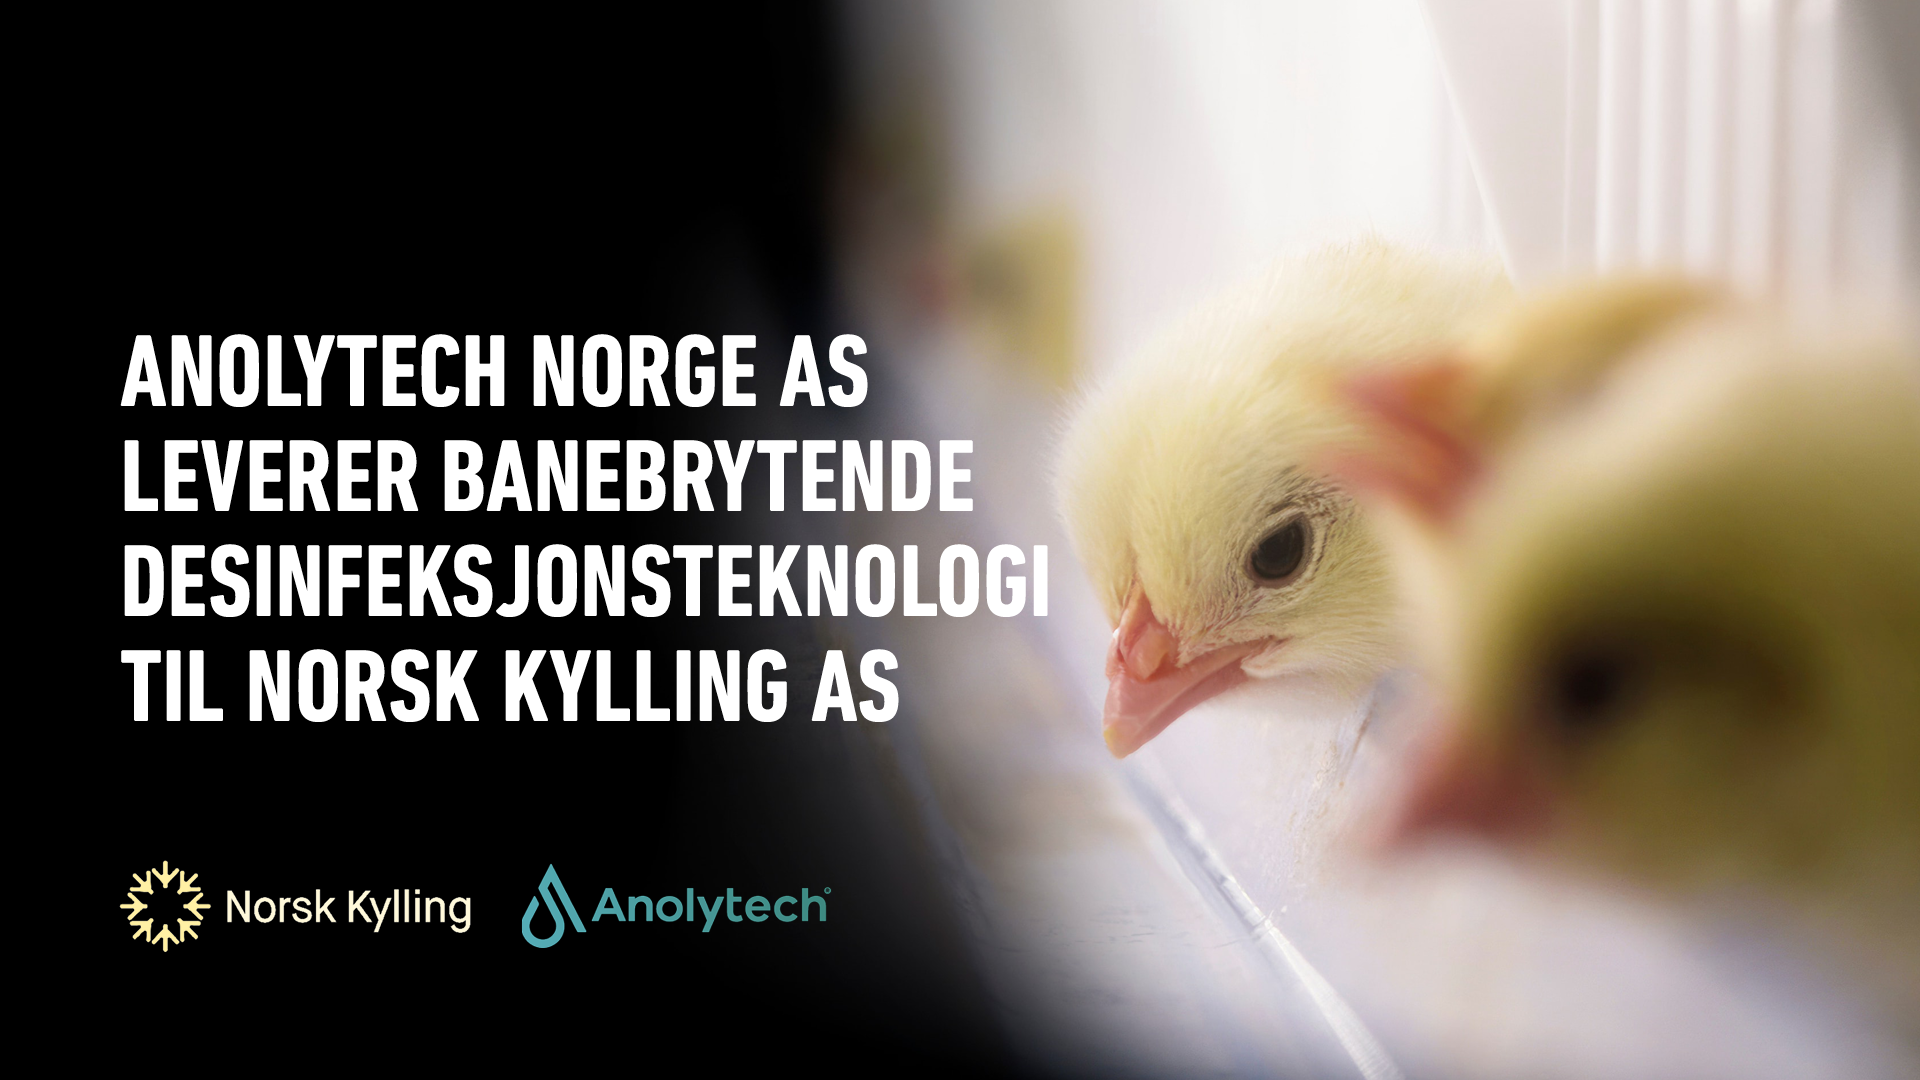 Anolytech Norge AS leverer banebrytende desinfeksjonsteknologi til Norsk Kylling AS